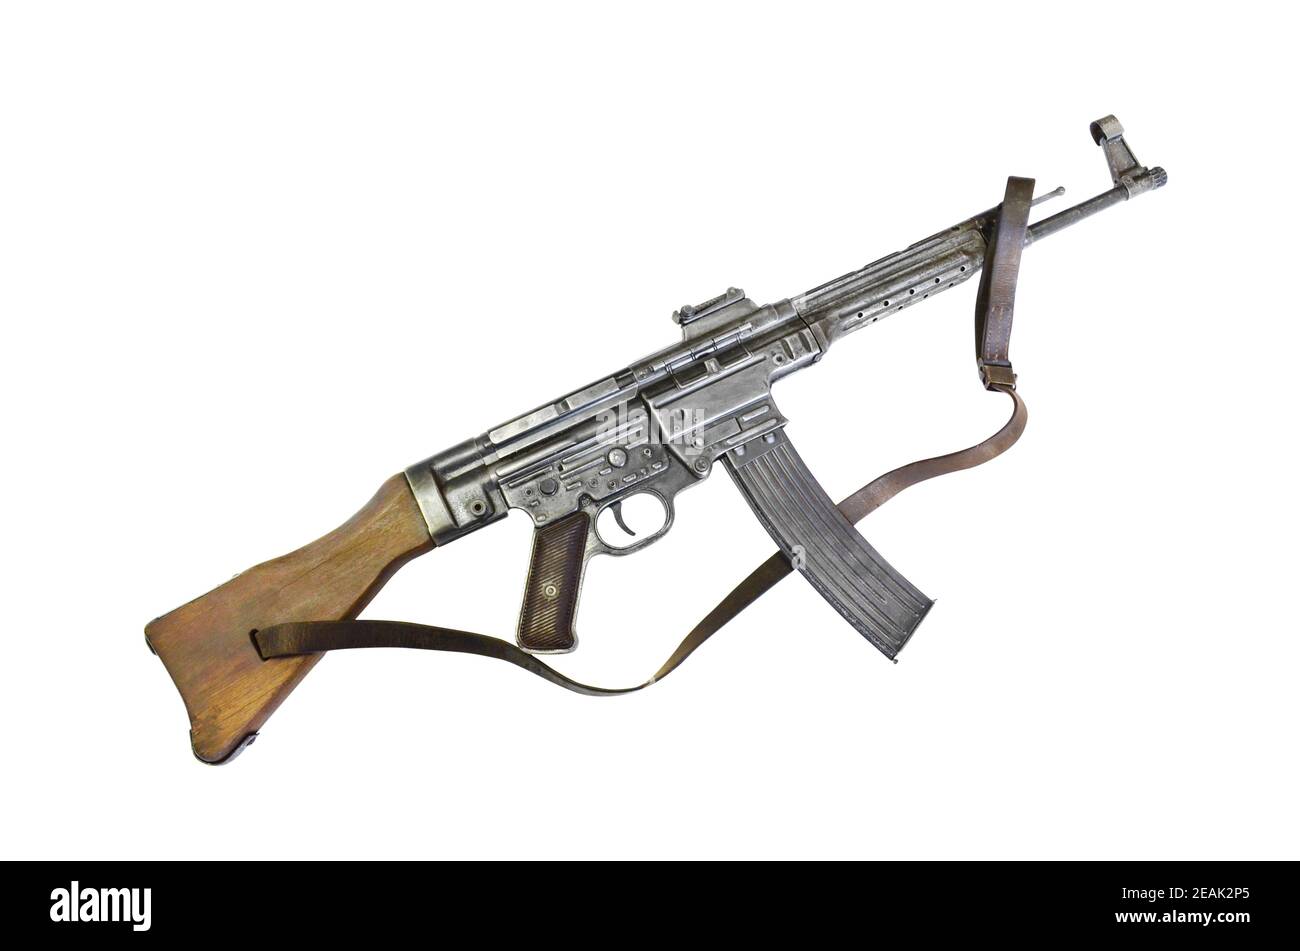 El StG 44 (abreviatura de Sturmgewehr 44, 'rifle de asalto 44') es un fusil de fuego selectivo alemán desarrollado durante la Segunda Guerra Mundial También se conoce como th Foto de stock